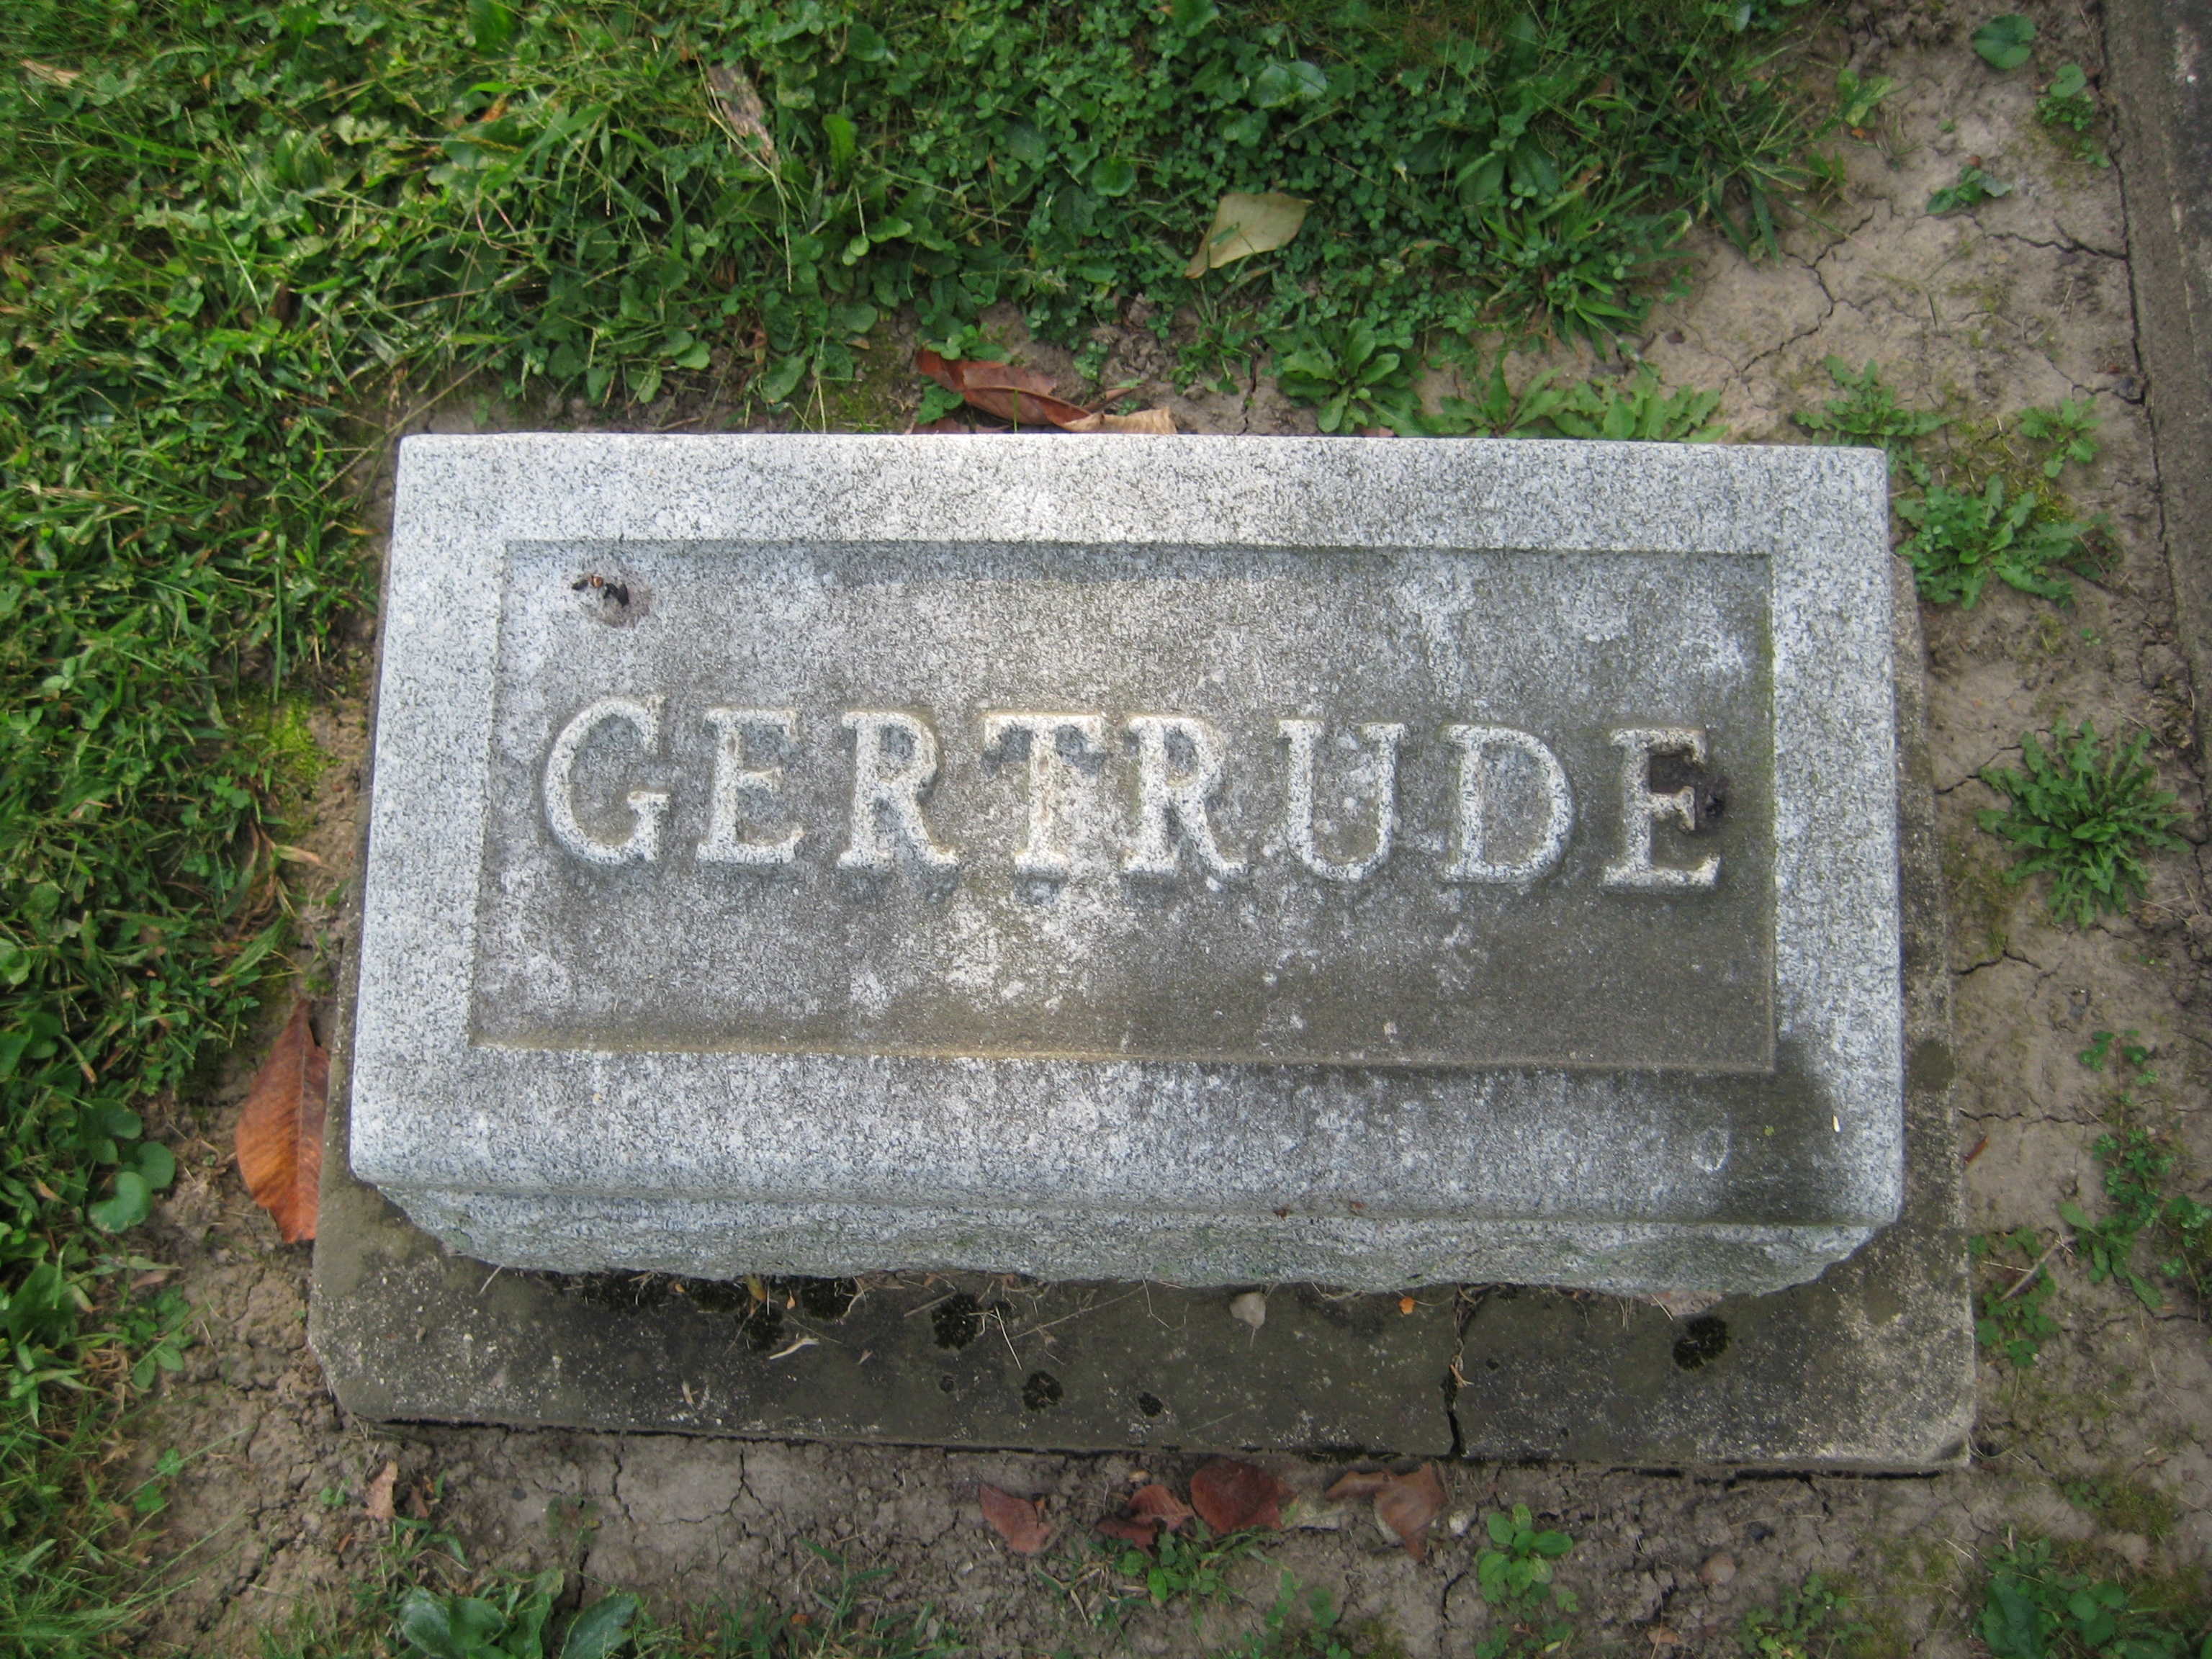 Deutsch, Gertrude